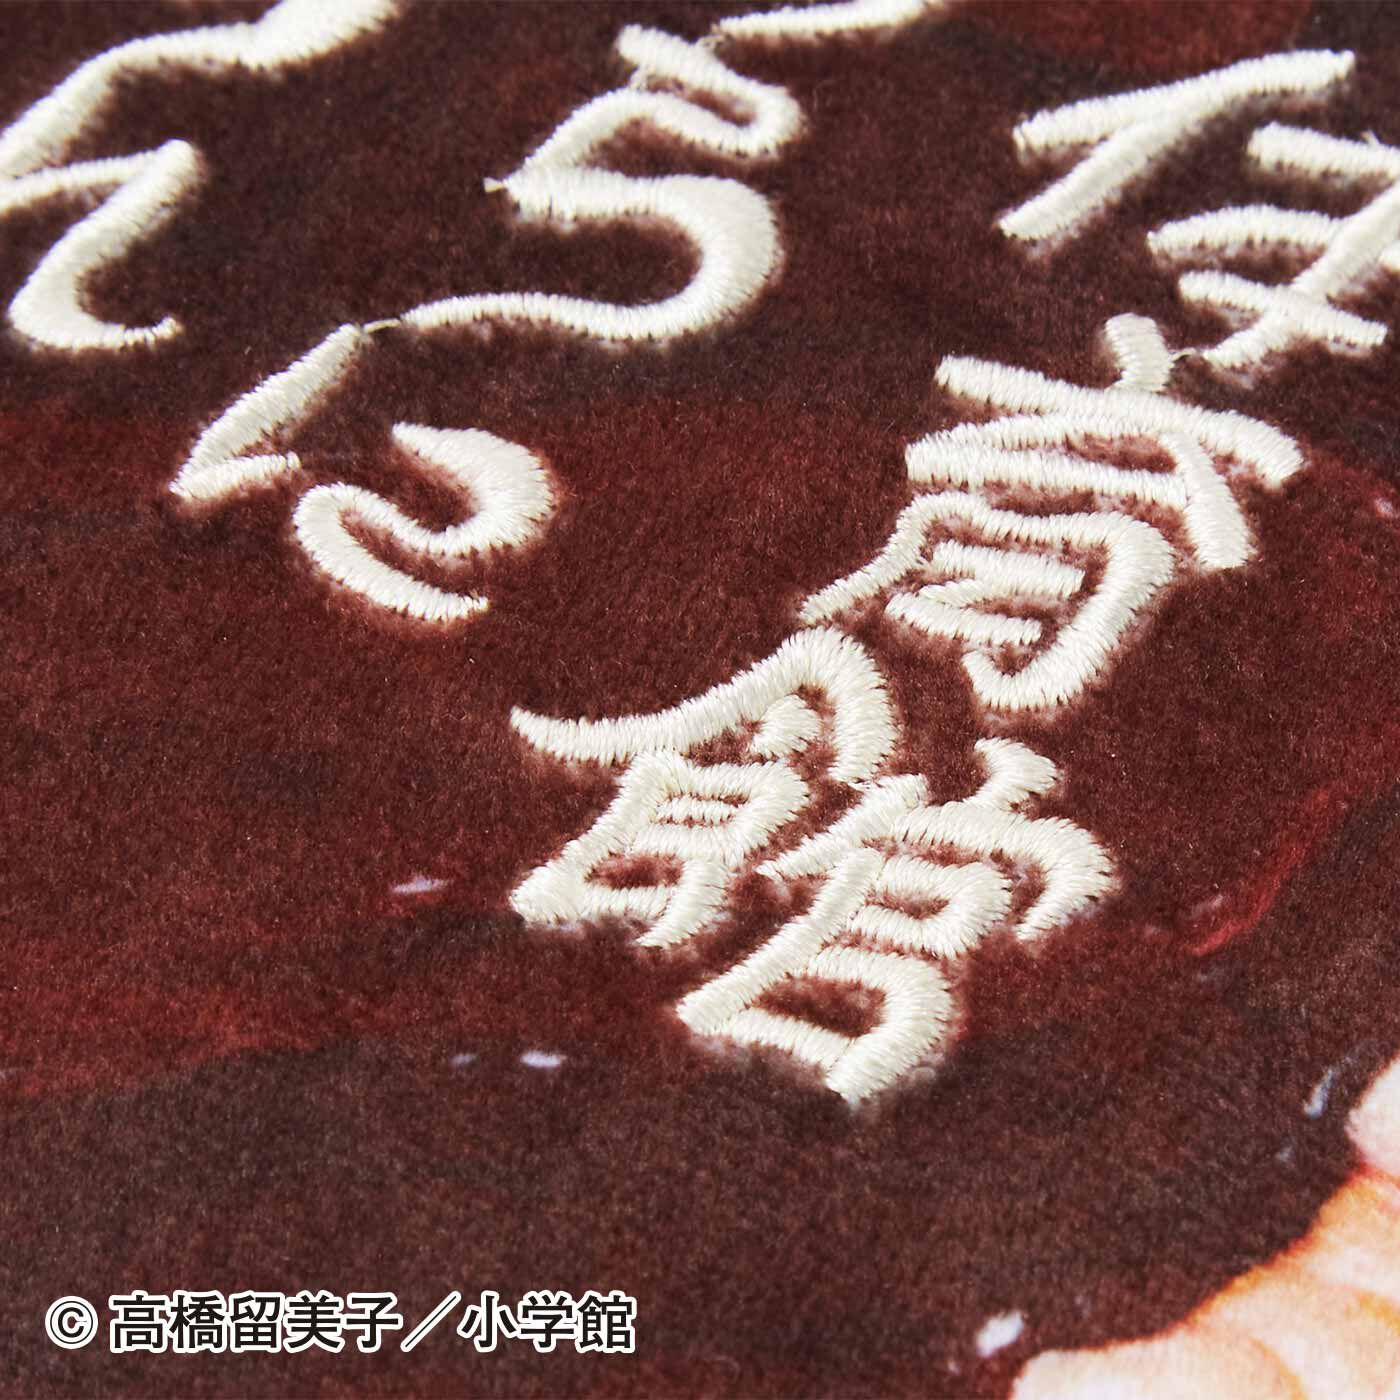 フェリシモの雑貨Kraso|らんま1/2 右京からの果たし状 お好み焼きポーチ|マヨネーズのメッセージは立体的な刺しゅうで表現。